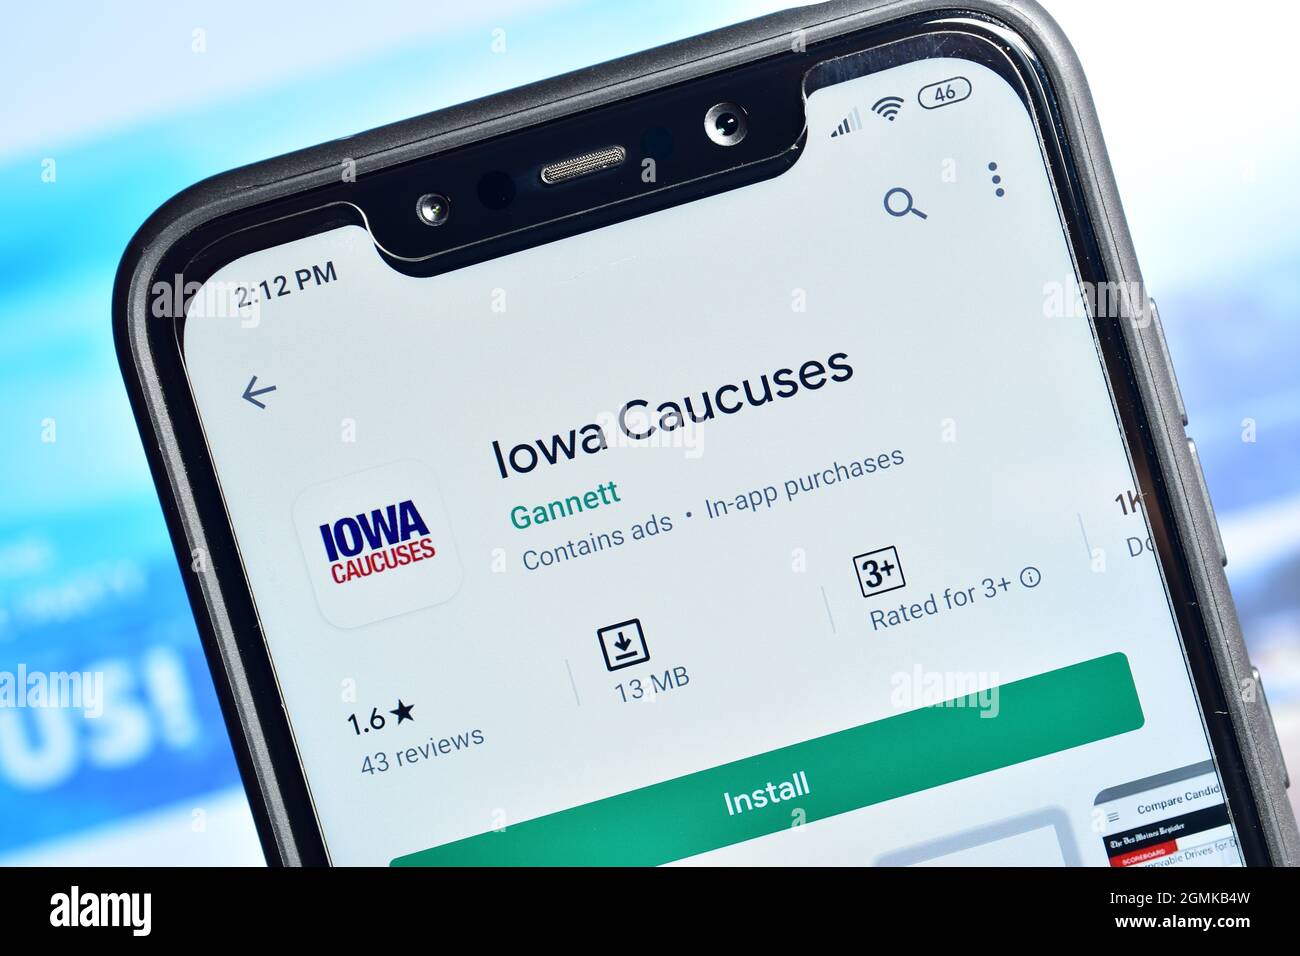 Nueva Delhi, India - 08 de febrero de 2020: IOWA caucuses aplicación en smartphone Foto de stock